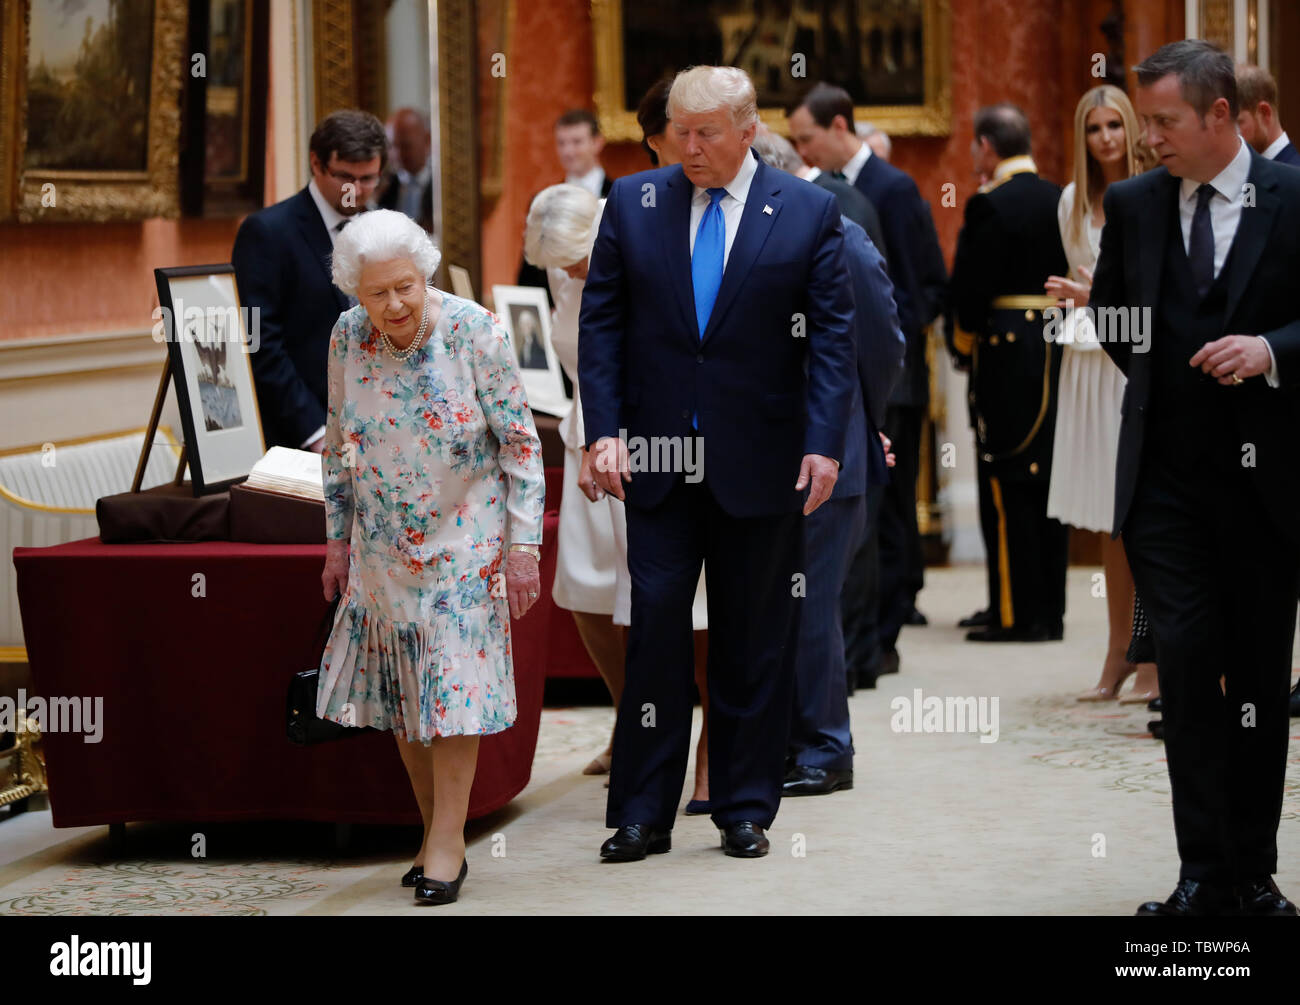 La reine Elizabeth II avec le Président Donald Trump voir une exposition spéciale dans la Galerie d'articles de la Collection Royale d'importance historique pour les États-Unis, à la suite d'un déjeuner privé au Palais de Buckingham à Londres, le premier jour de sa visite d'Etat de trois jours au Royaume-Uni. Banque D'Images